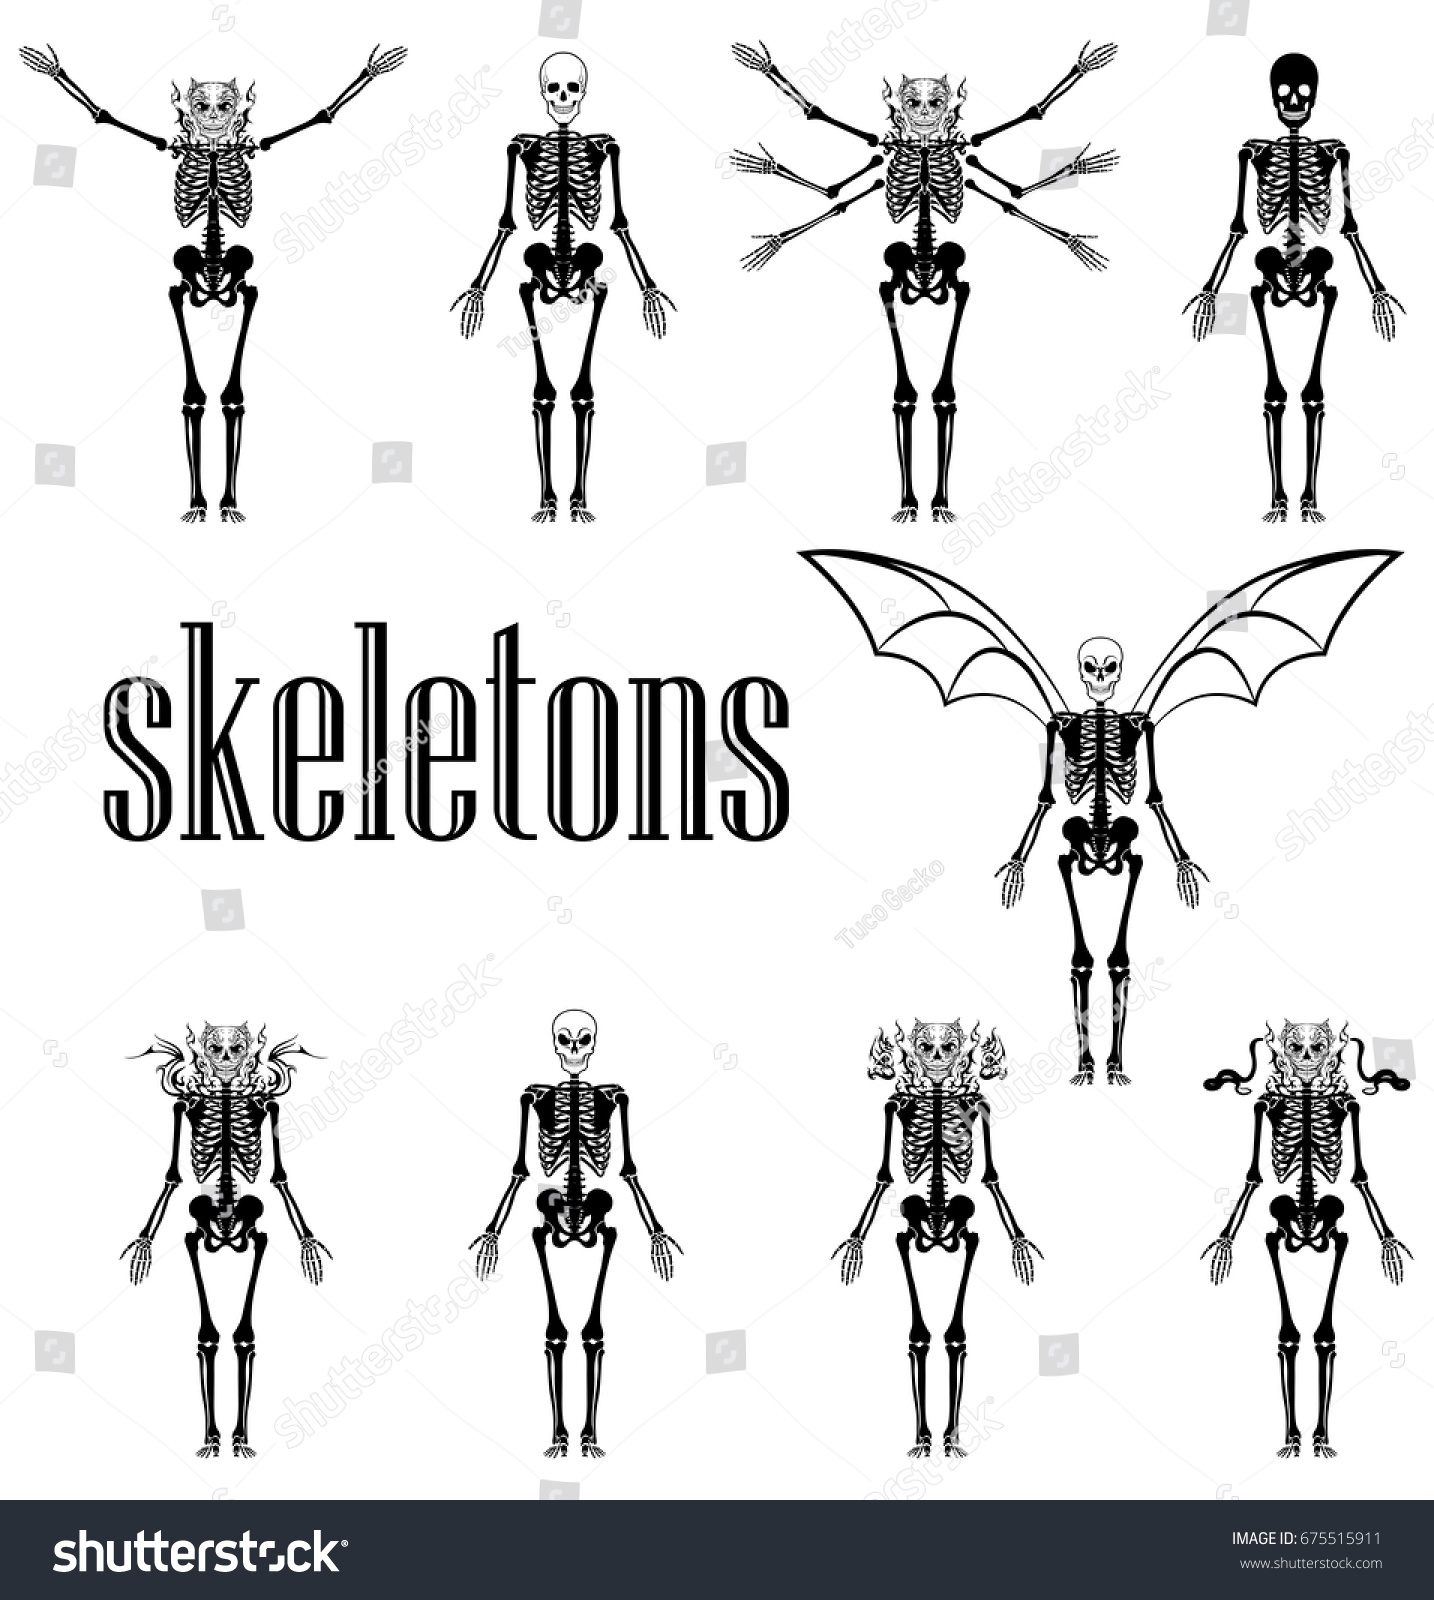 Skeletons Stock Vector 675515911 - Shutterstock